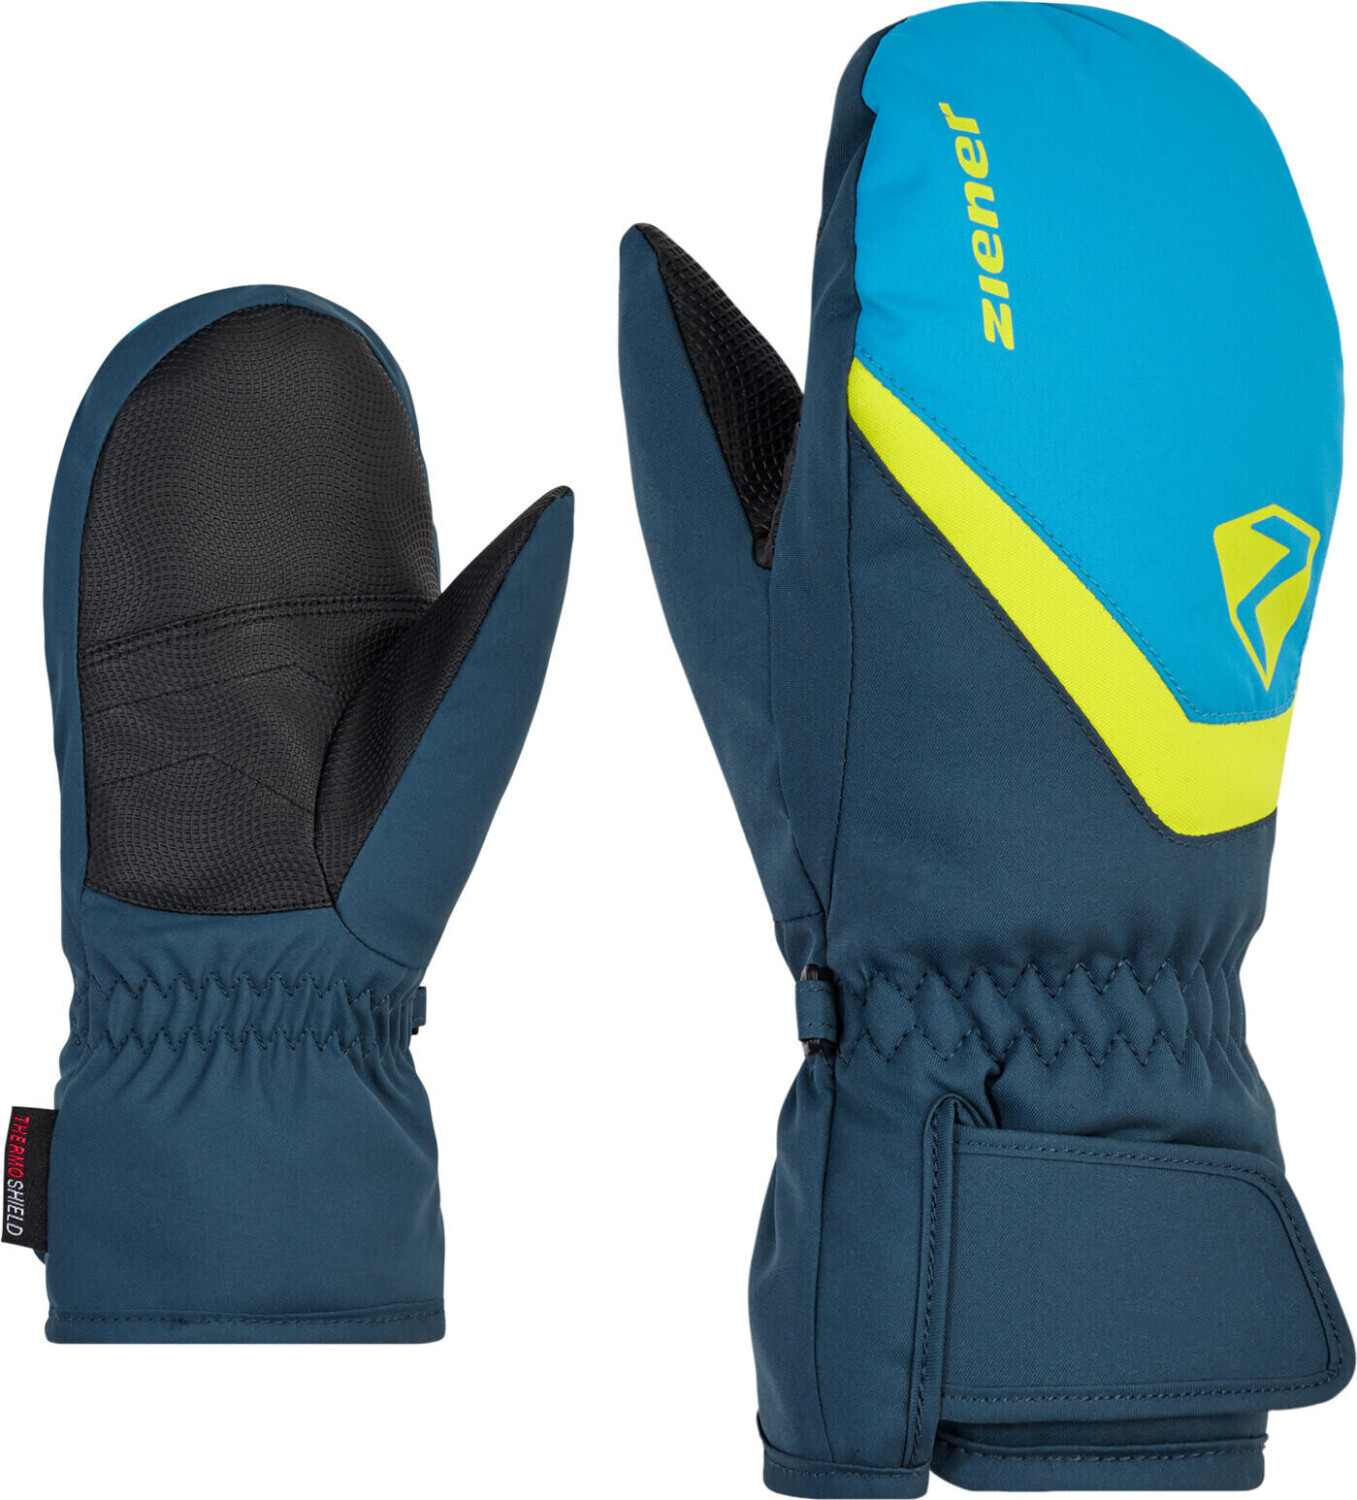 Ziener Loriano ASR Mitten Glove Junior ab € 19,99 | Preisvergleich bei